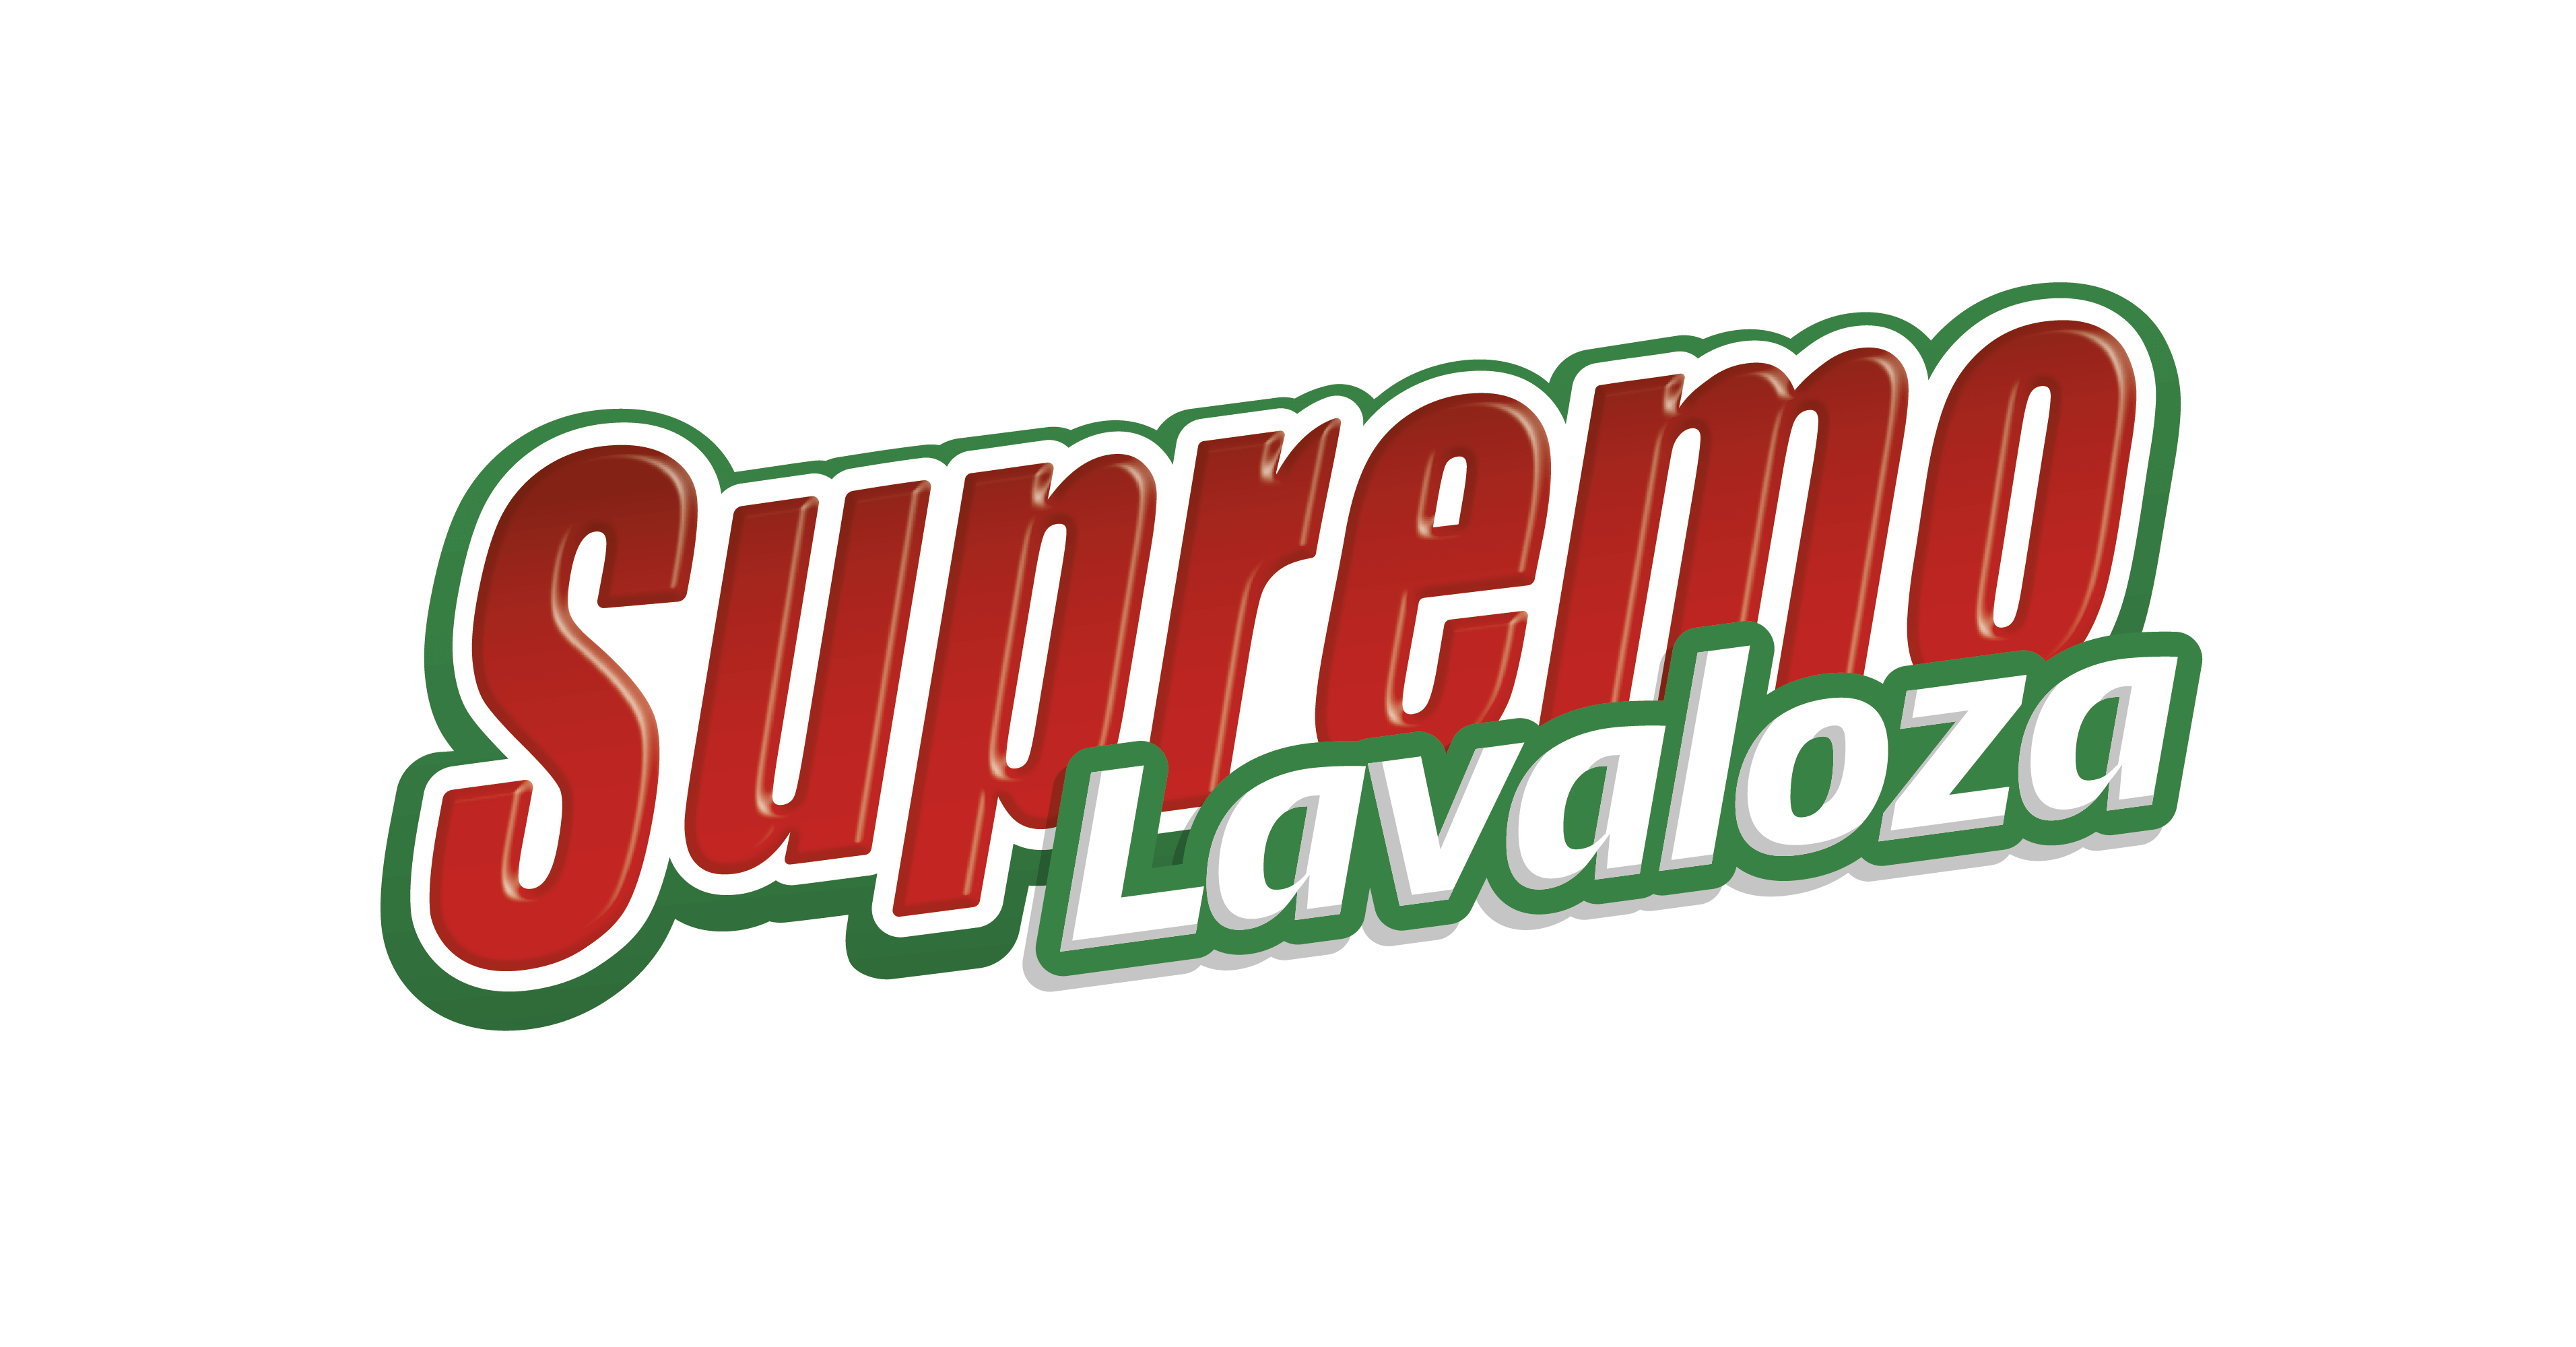 Logo Supremo Lava Loza